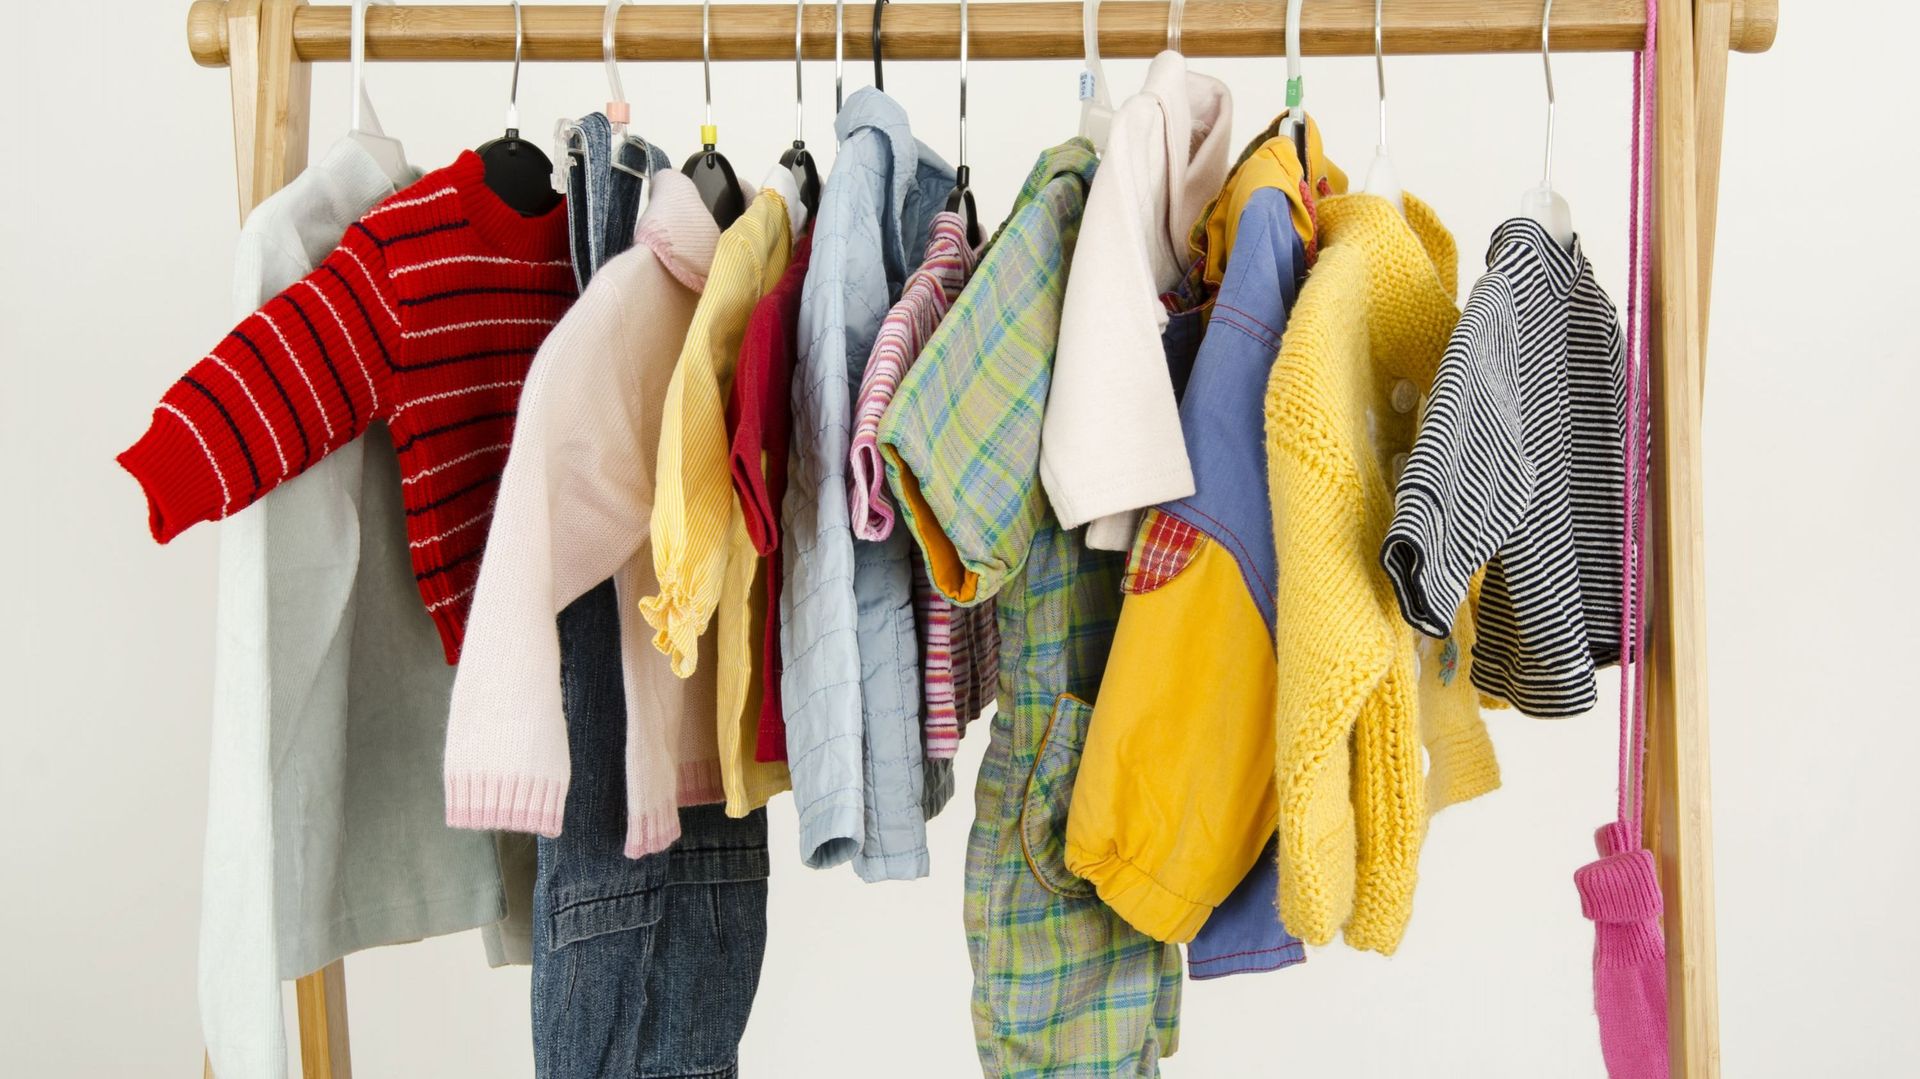 Des chercheurs américains trouvent des PFAS dans des vêtements pour enfants